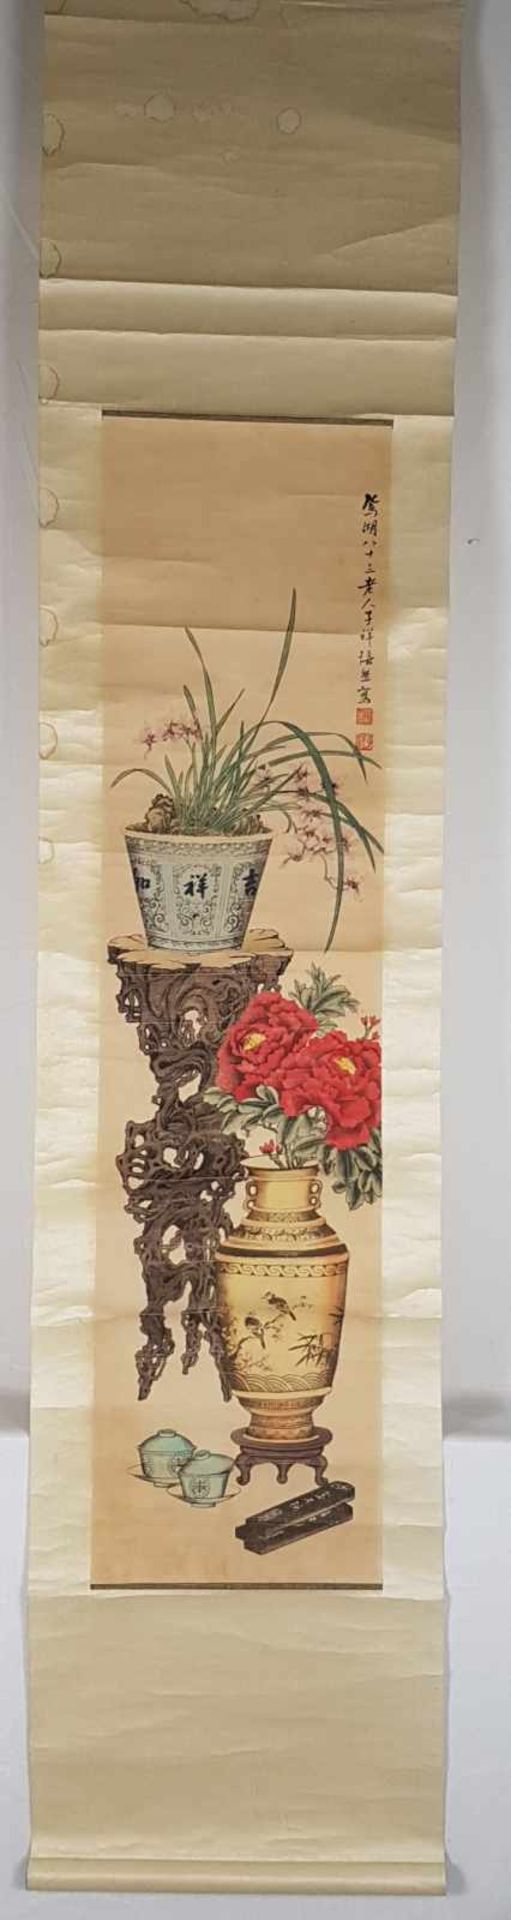 Zwei Rollbilder - China um 1900,Gelehrtenuntersilien: 2 Vasen,1 blühende Lotuspflanze, - Bild 5 aus 9